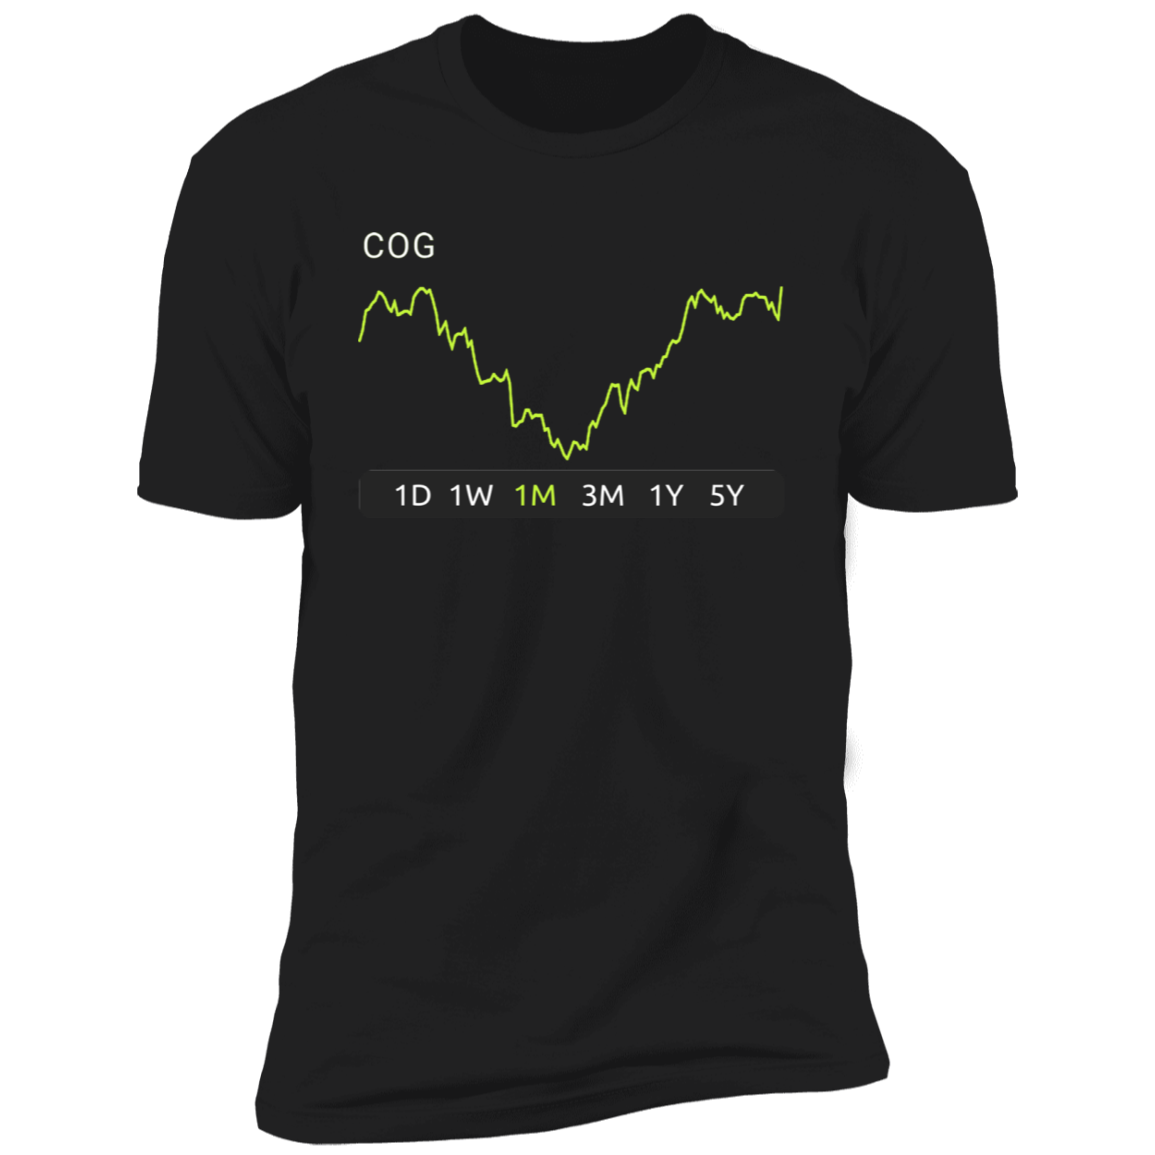 COG Stock 1m Premium T-Shirt